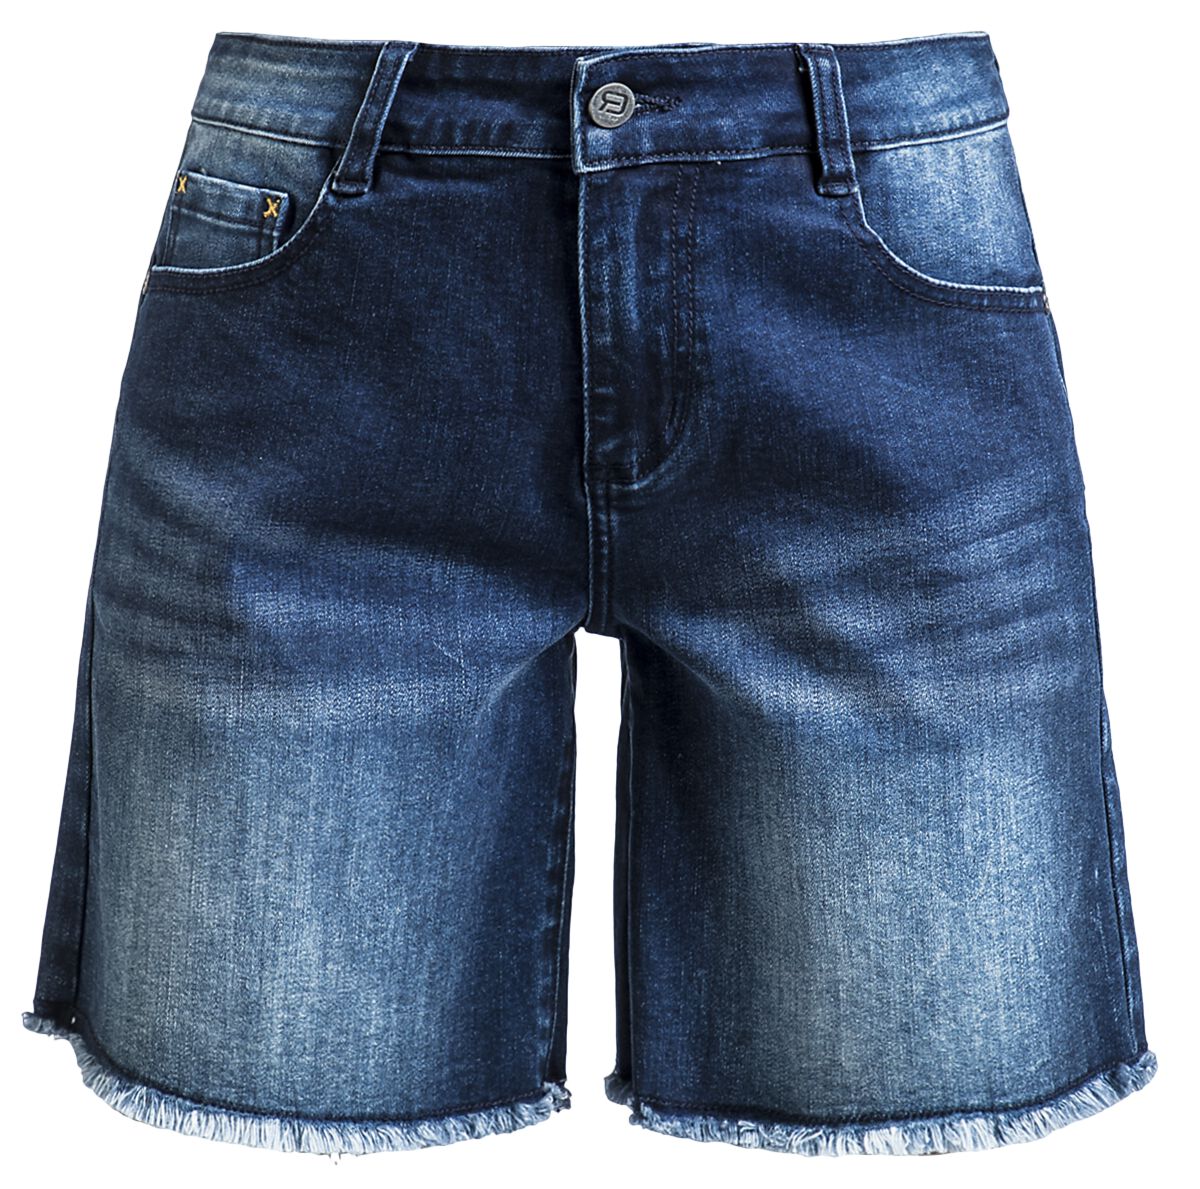 RED by EMP - Jeans Shorts mit Destroy Detail - Short - dunkelblau - EMP Exklusiv!